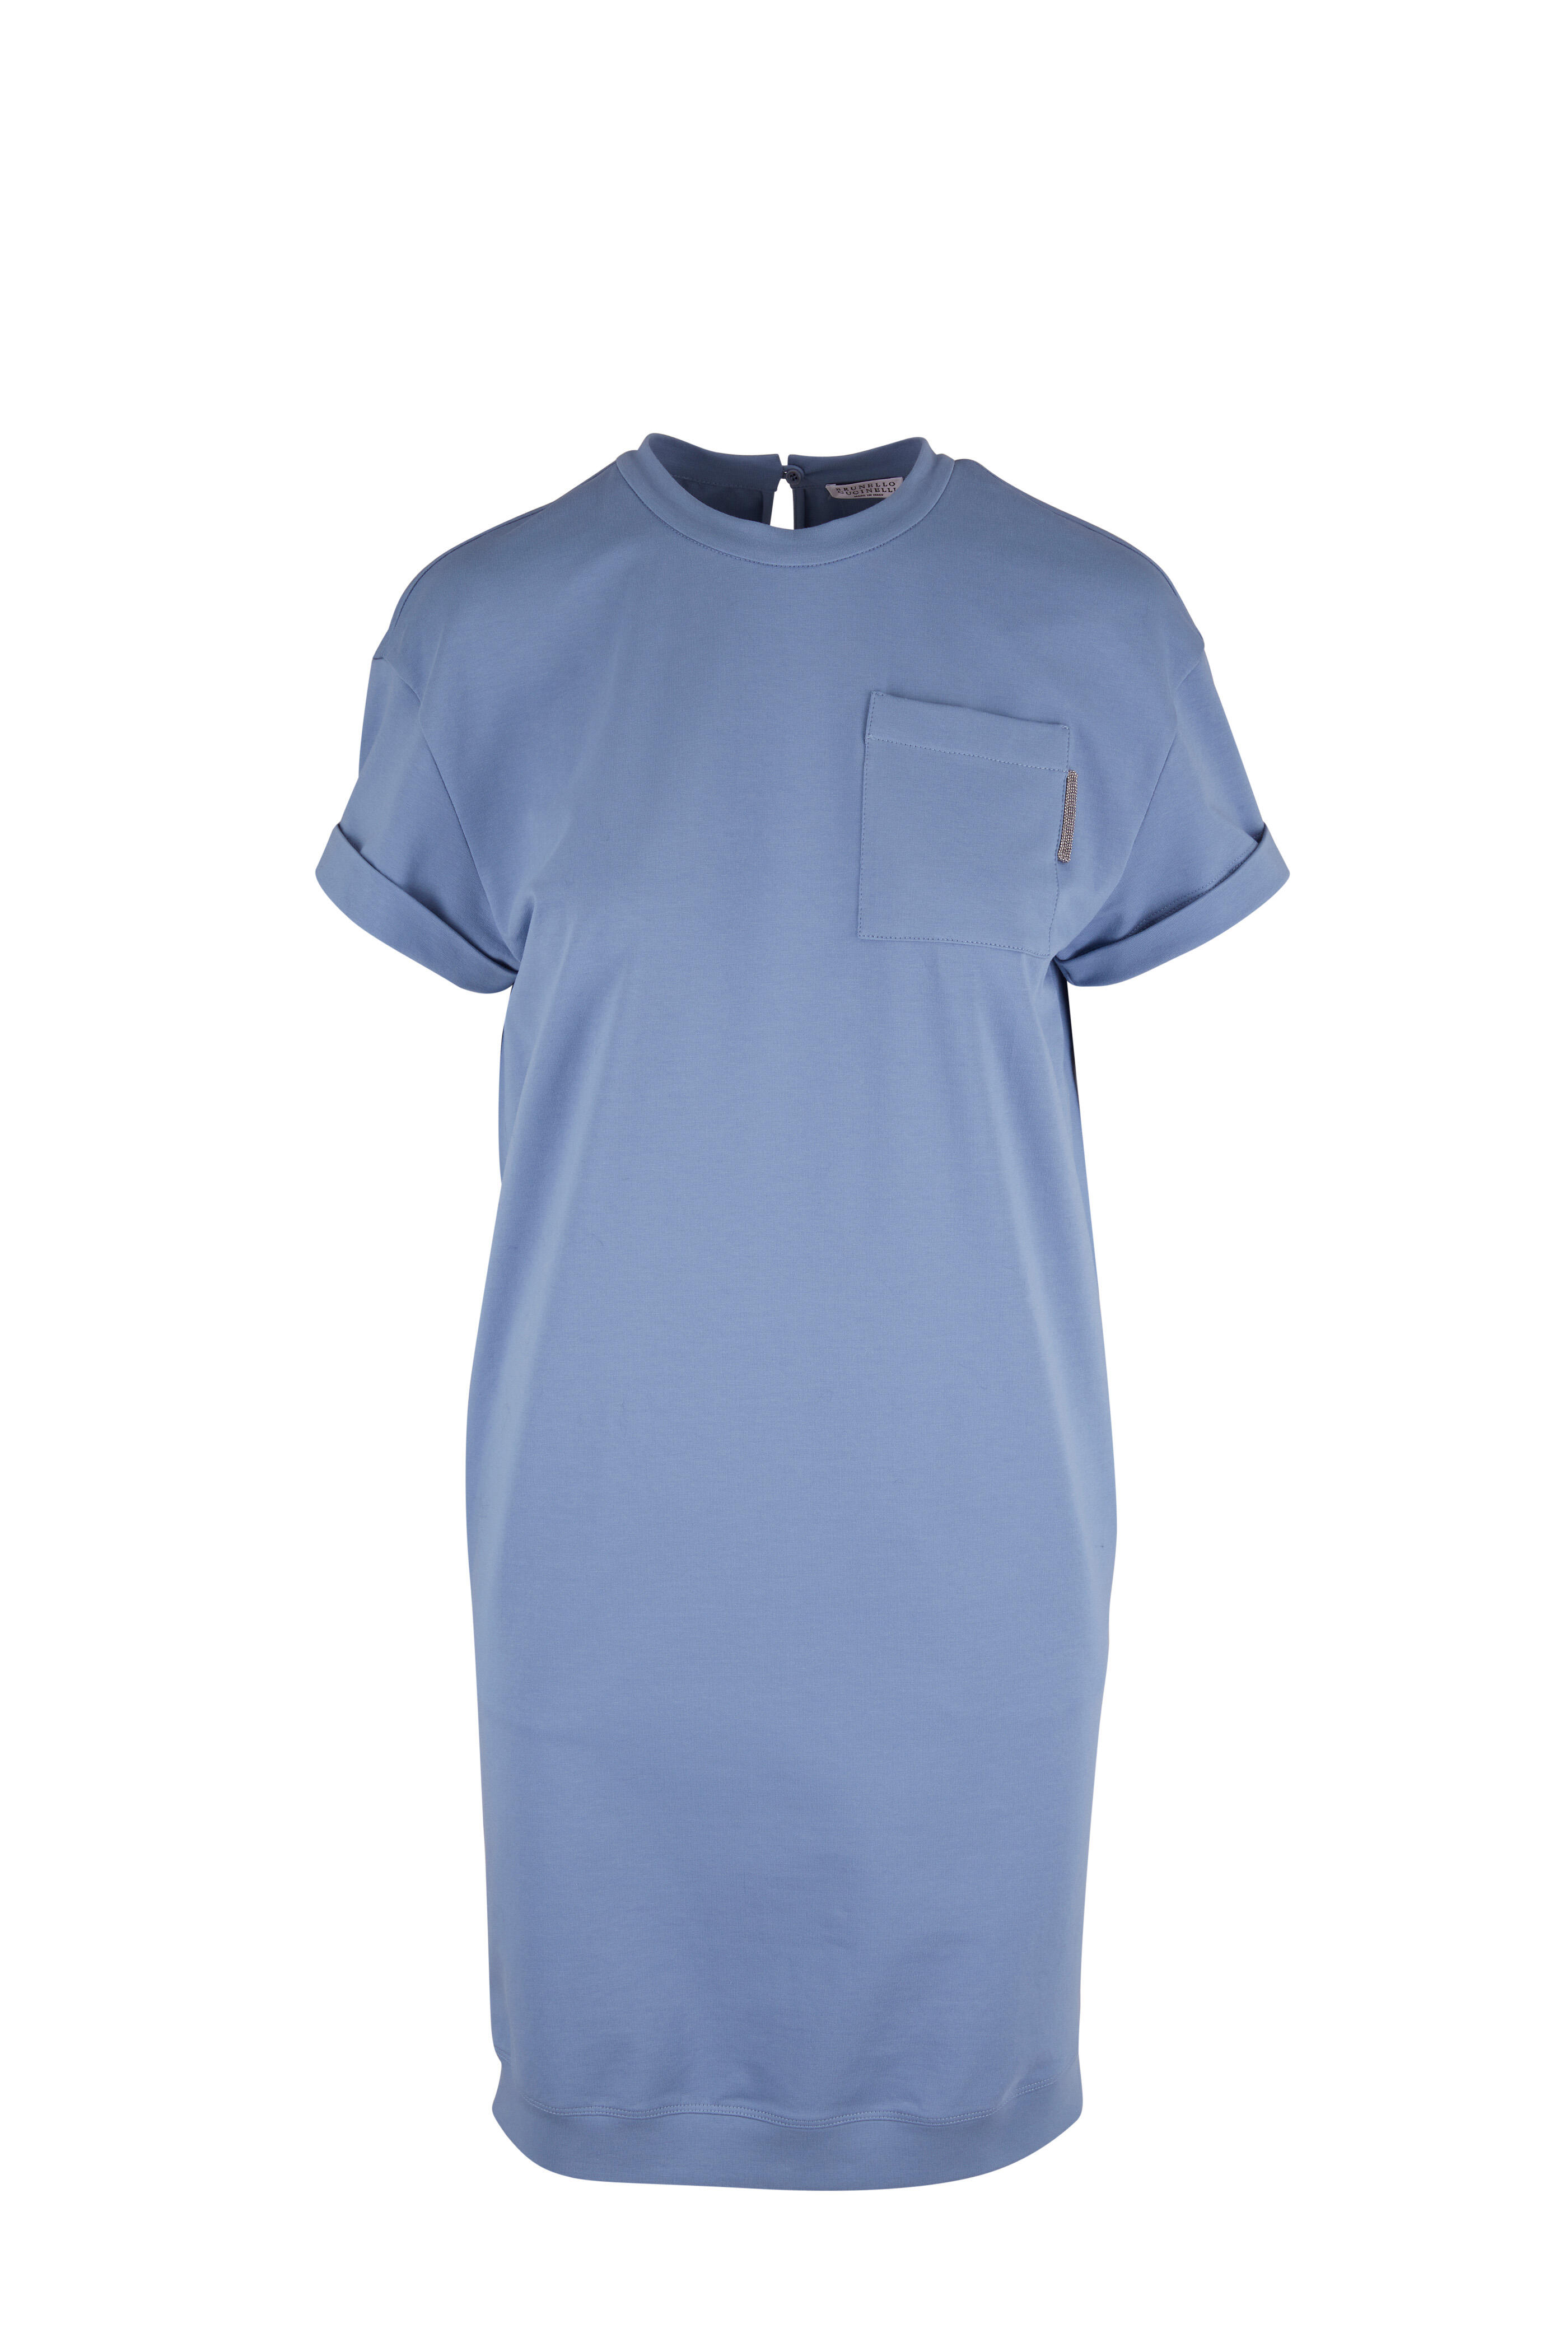 Brunello Cucinelli - Blue Short Sleeve T-Shirt Dress